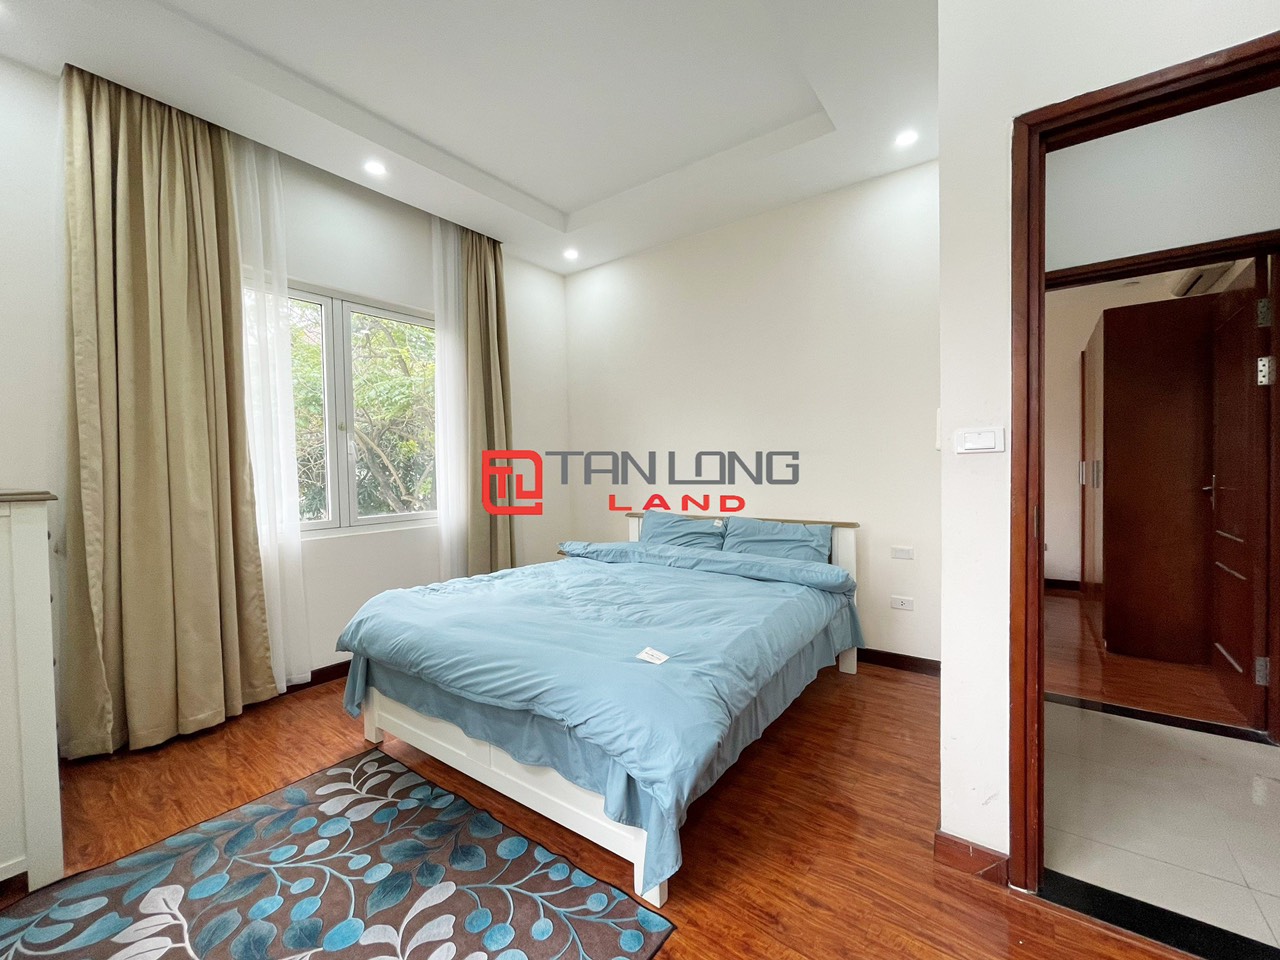 5 Bedrooms Duplex Villa for Rent with Reasonable Price in Vinhomes Riverside Long Bien 11